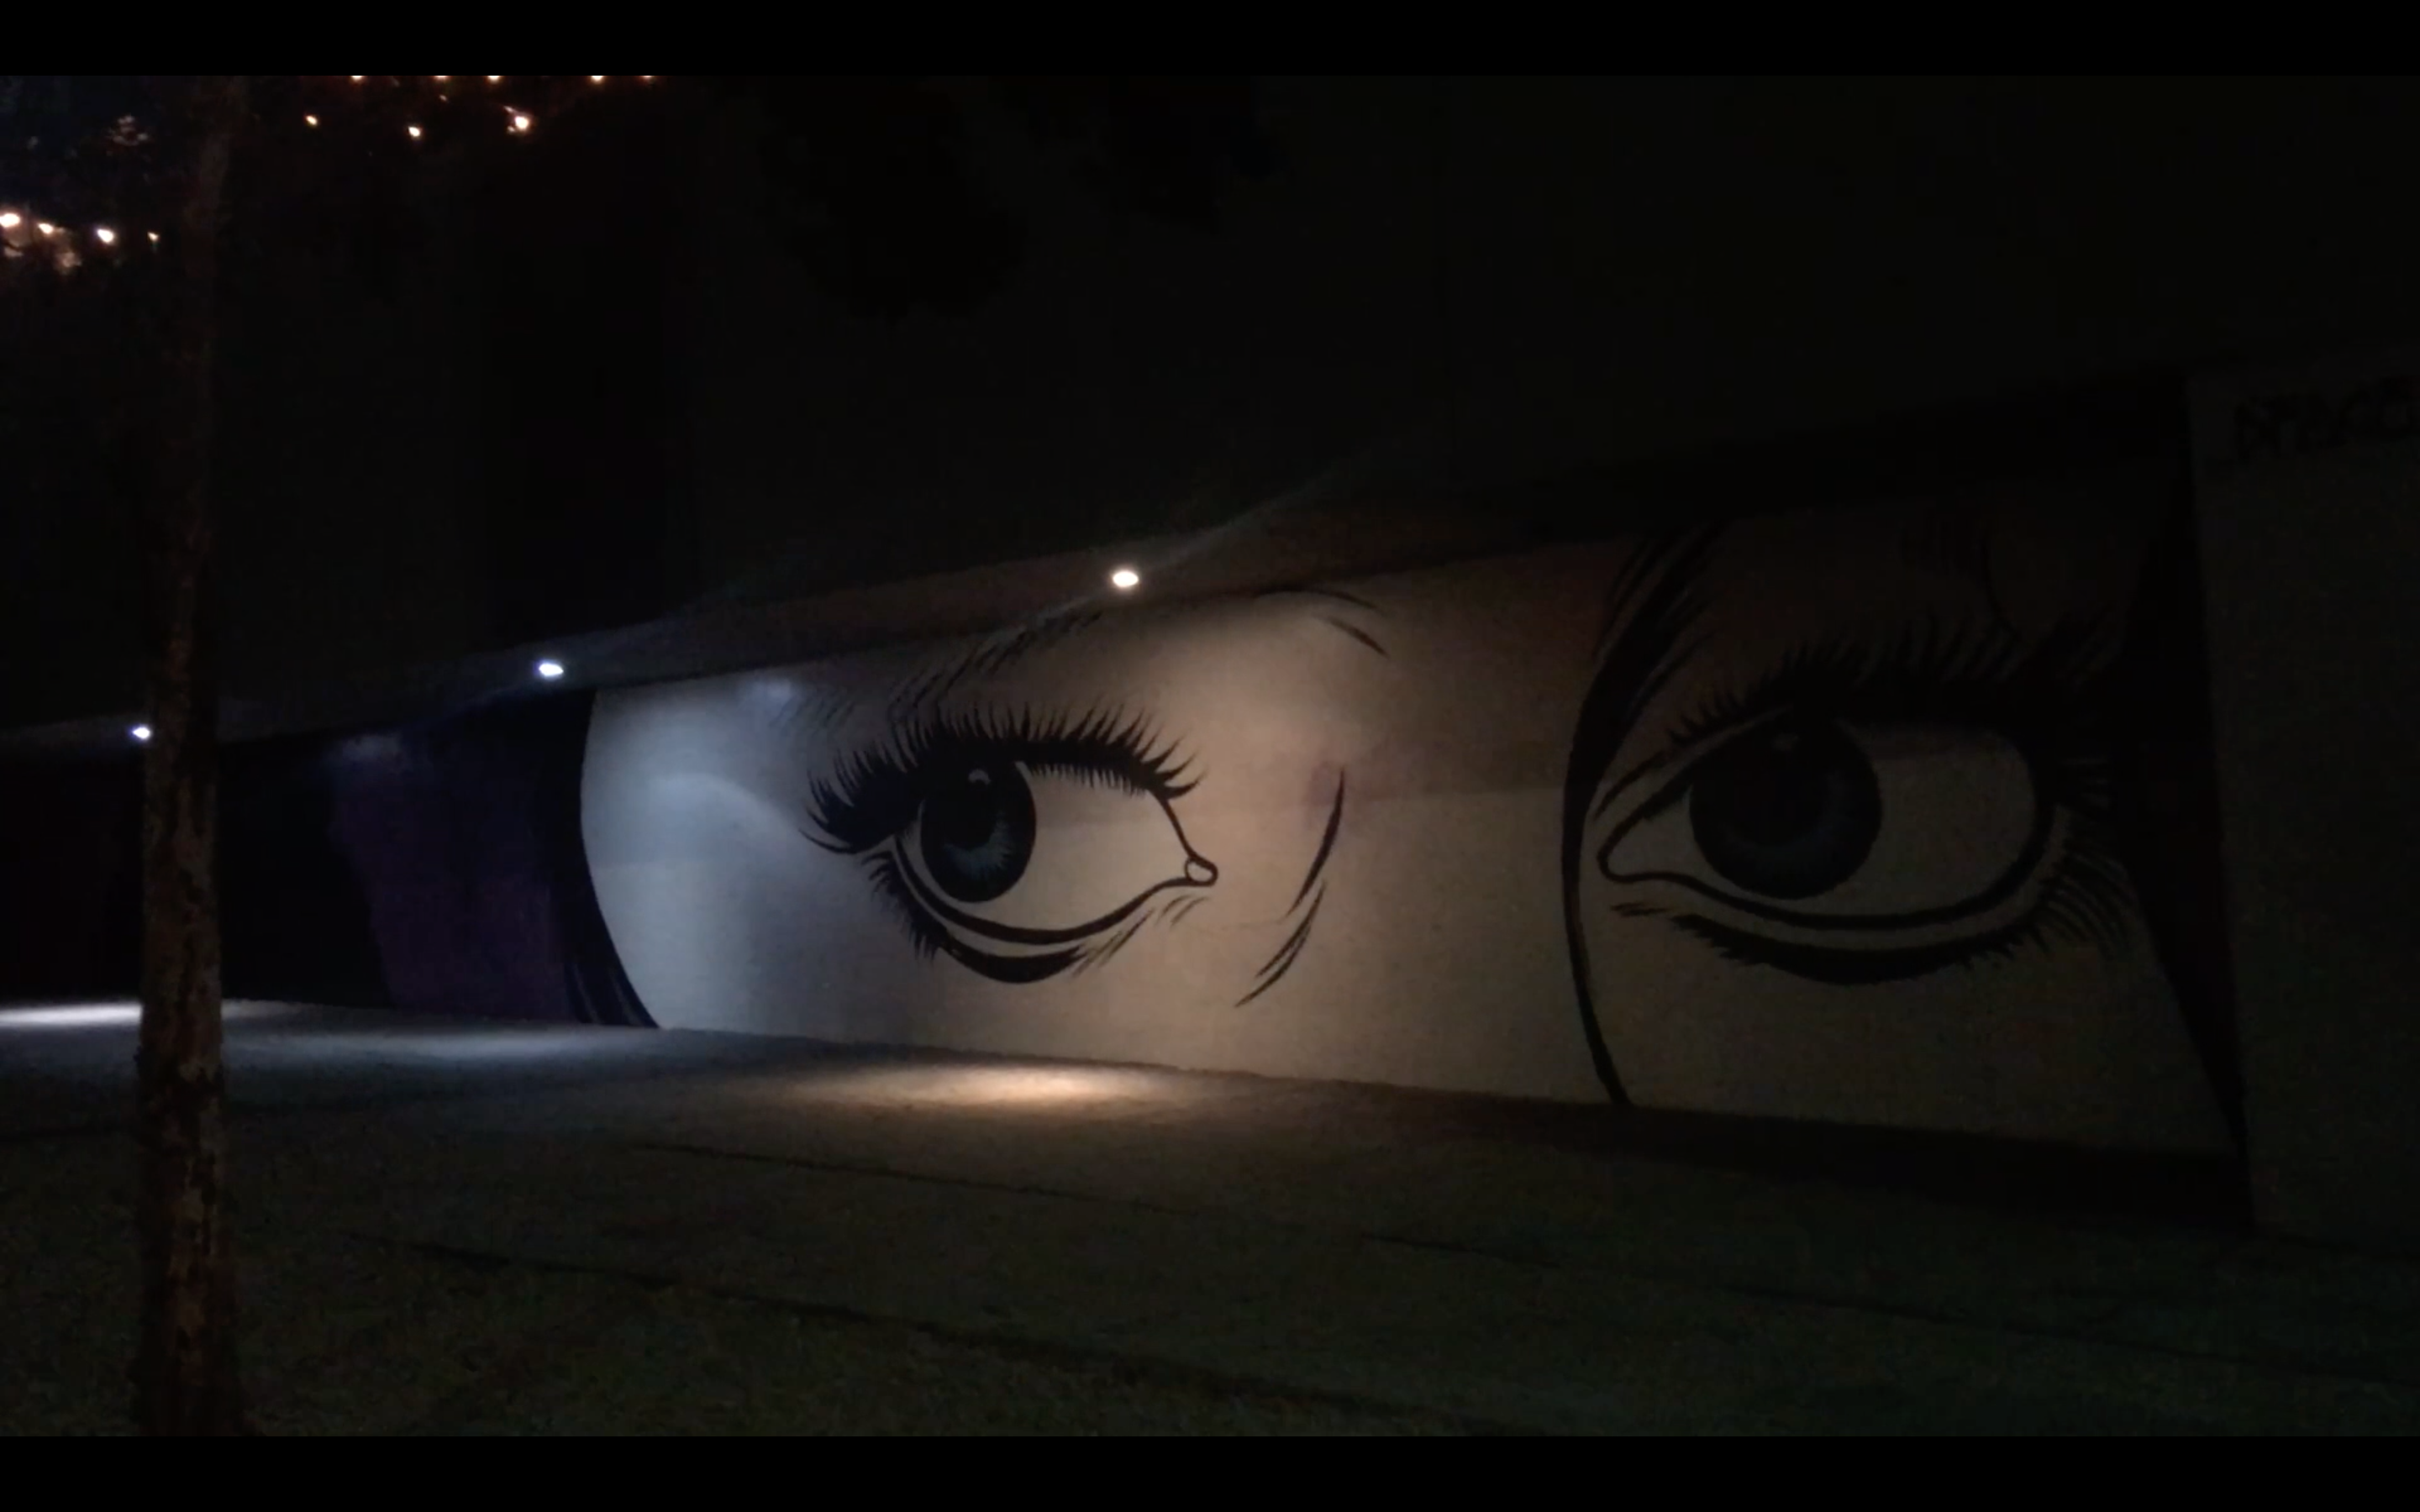 mural of eyes painted on wall, viewed under streetlights, nighttime